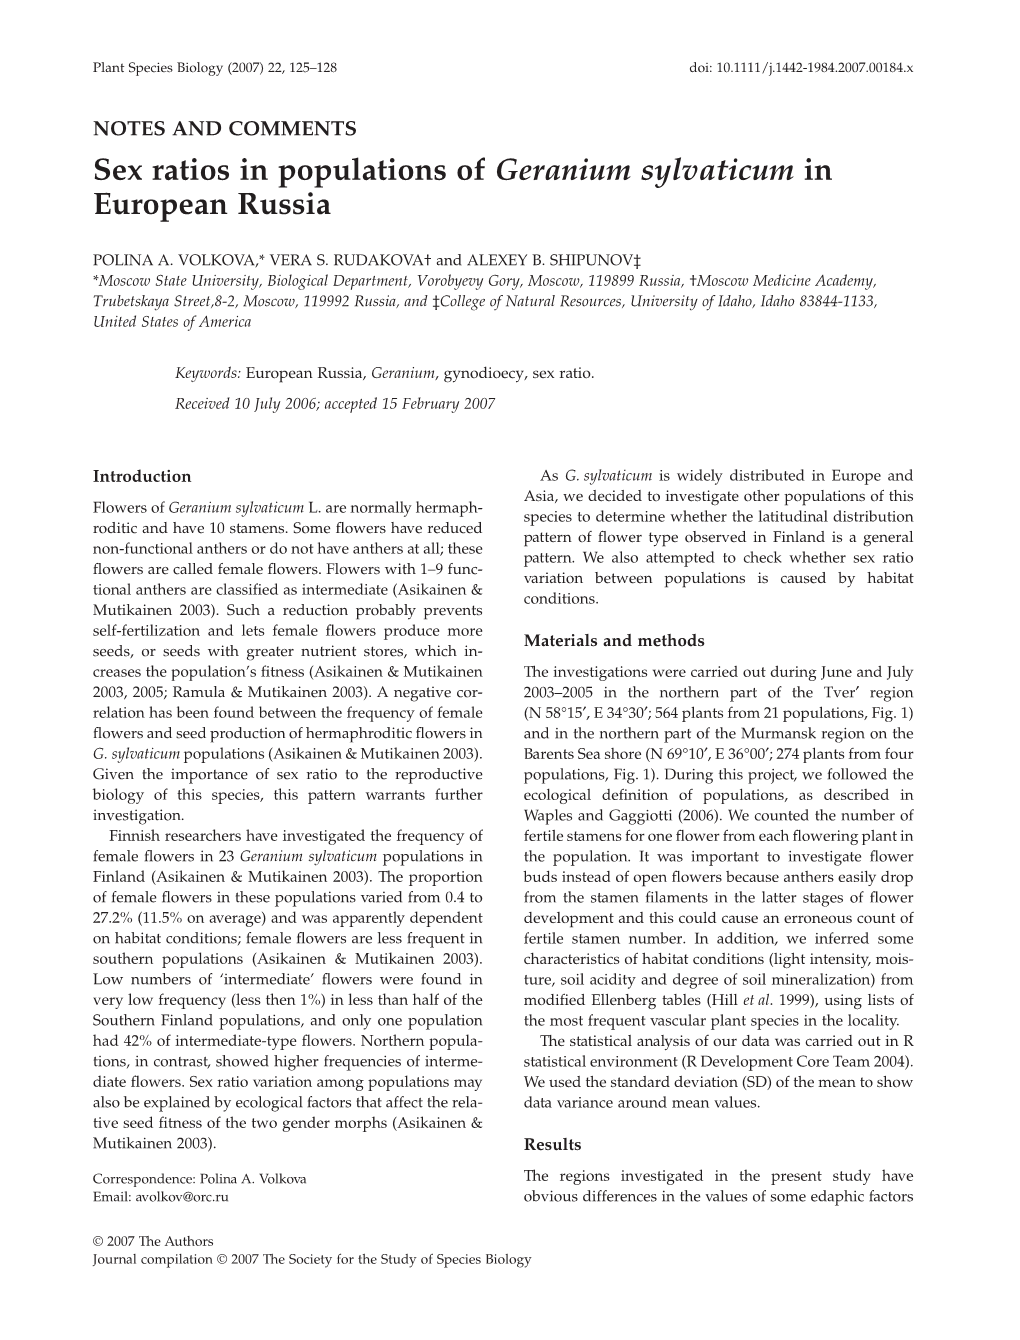 Sex Ratios in Populations of Geranium Sylvaticum in European Russia